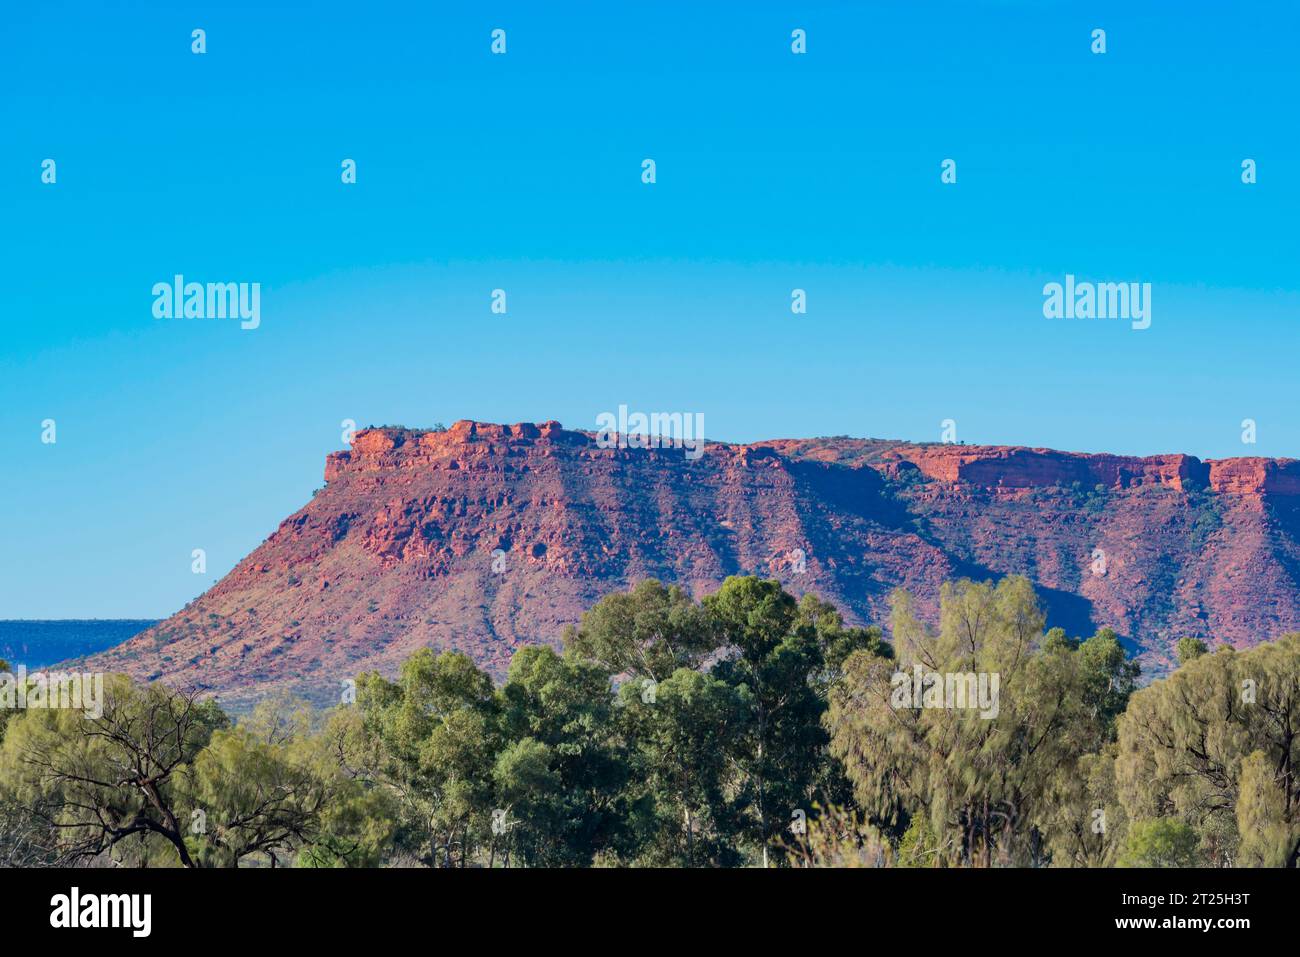 Die Gorge Gill Range in der Nähe des Kings Canyon (Watarrka) Northern Territory, Australien, mit Wüsteneichen (Allocasuarina decaisneana) im Vordergrund Stockfoto